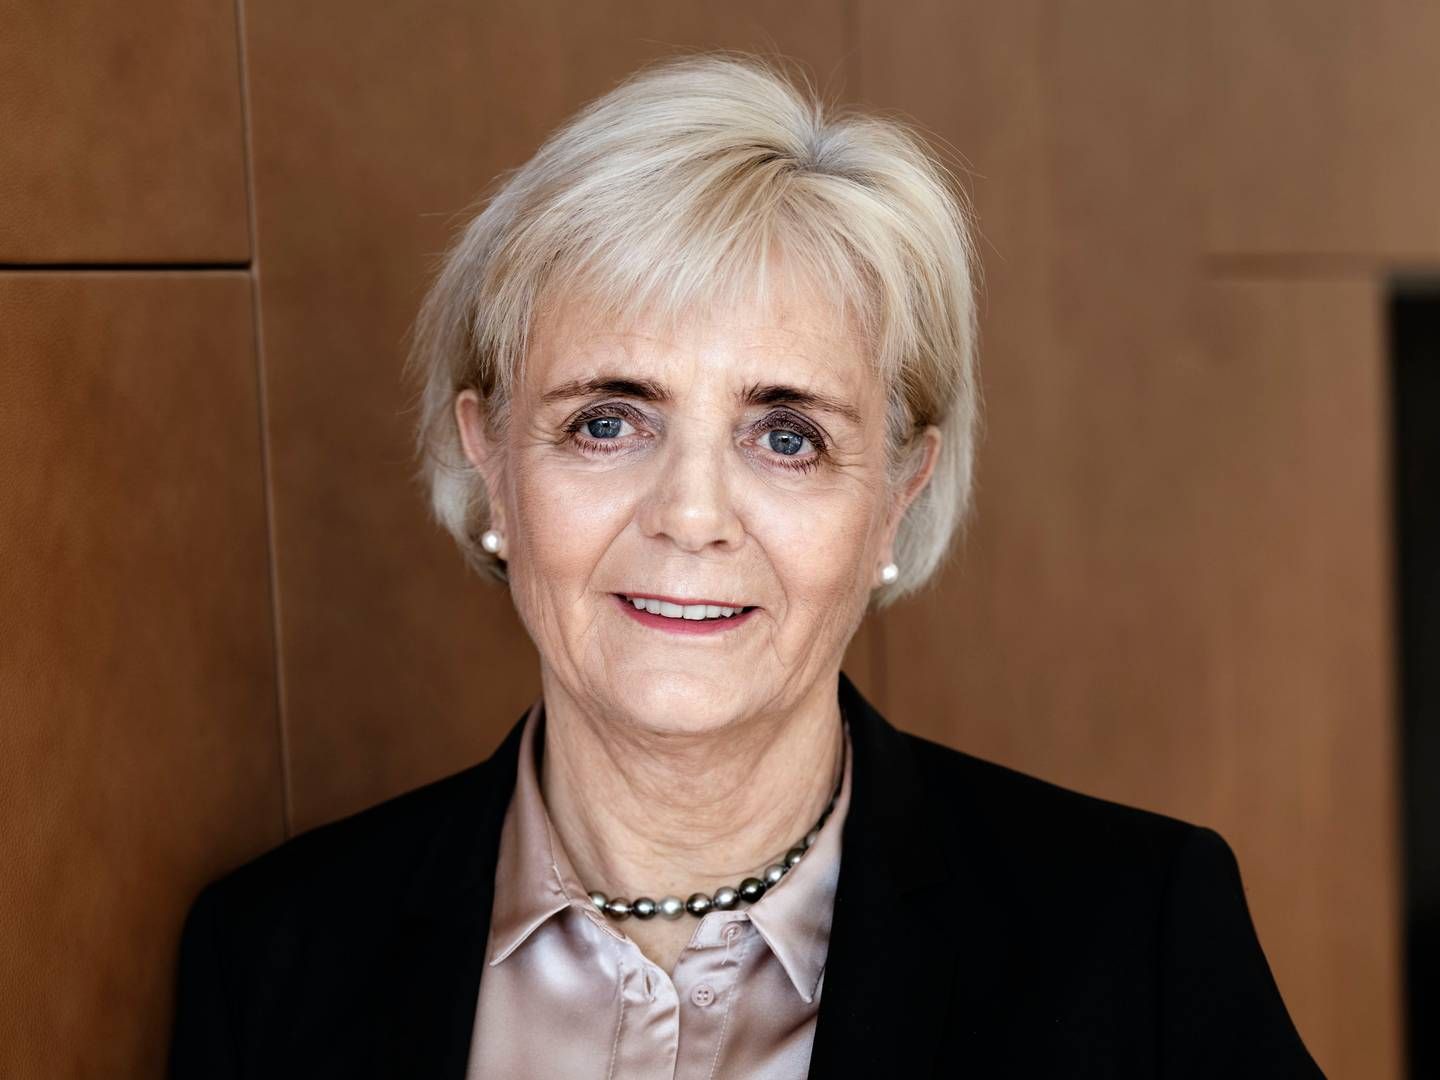 Sydbanks adm. direktør Karen Frøsig var i 2019 igennem et magtopgør, der på mange måder gjorde hende stærkere, mener kredsformanden for ansatte i Sydbank, Jarl Oxlund. | Photo: Sydbank-pr